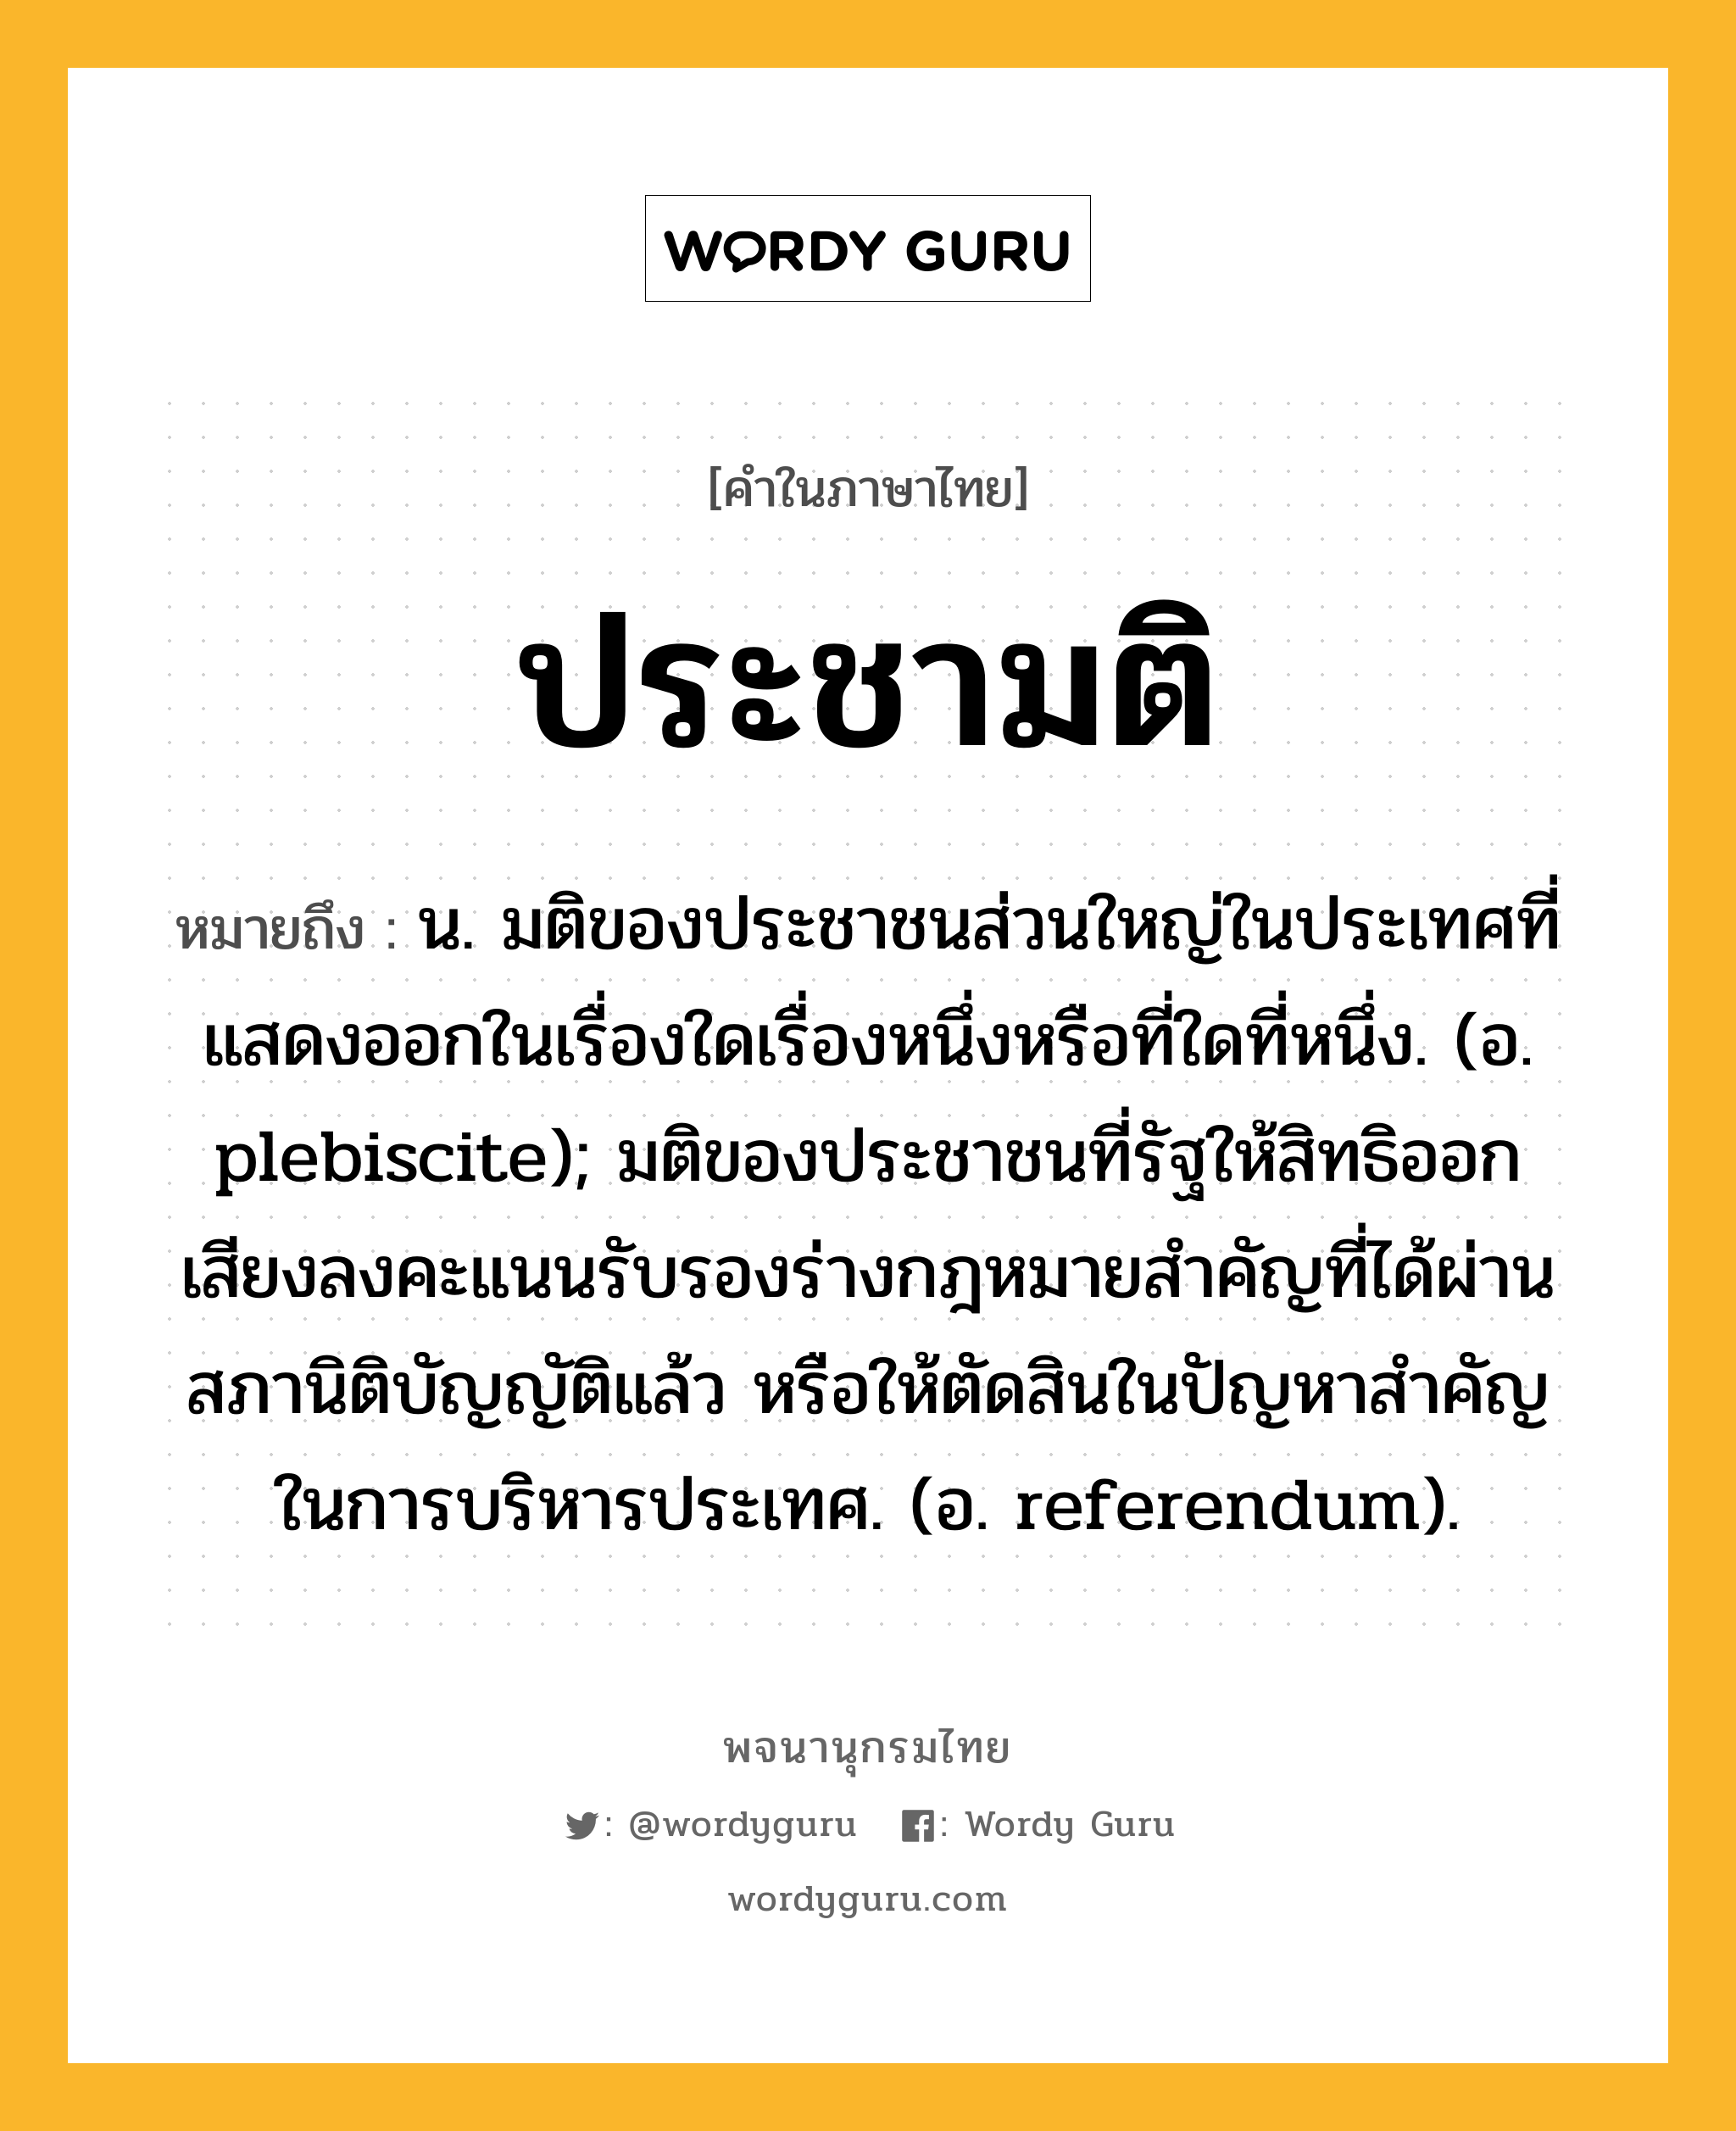 ประชามติ ความหมาย หมายถึงอะไร?, คำในภาษาไทย ประชามติ หมายถึง น. มติของประชาชนส่วนใหญ่ในประเทศที่แสดงออกในเรื่องใดเรื่องหนึ่งหรือที่ใดที่หนึ่ง. (อ. plebiscite); มติของประชาชนที่รัฐให้สิทธิออกเสียงลงคะแนนรับรองร่างกฎหมายสําคัญที่ได้ผ่านสภานิติบัญญัติแล้ว หรือให้ตัดสินในปัญหาสําคัญในการบริหารประเทศ. (อ. referendum).